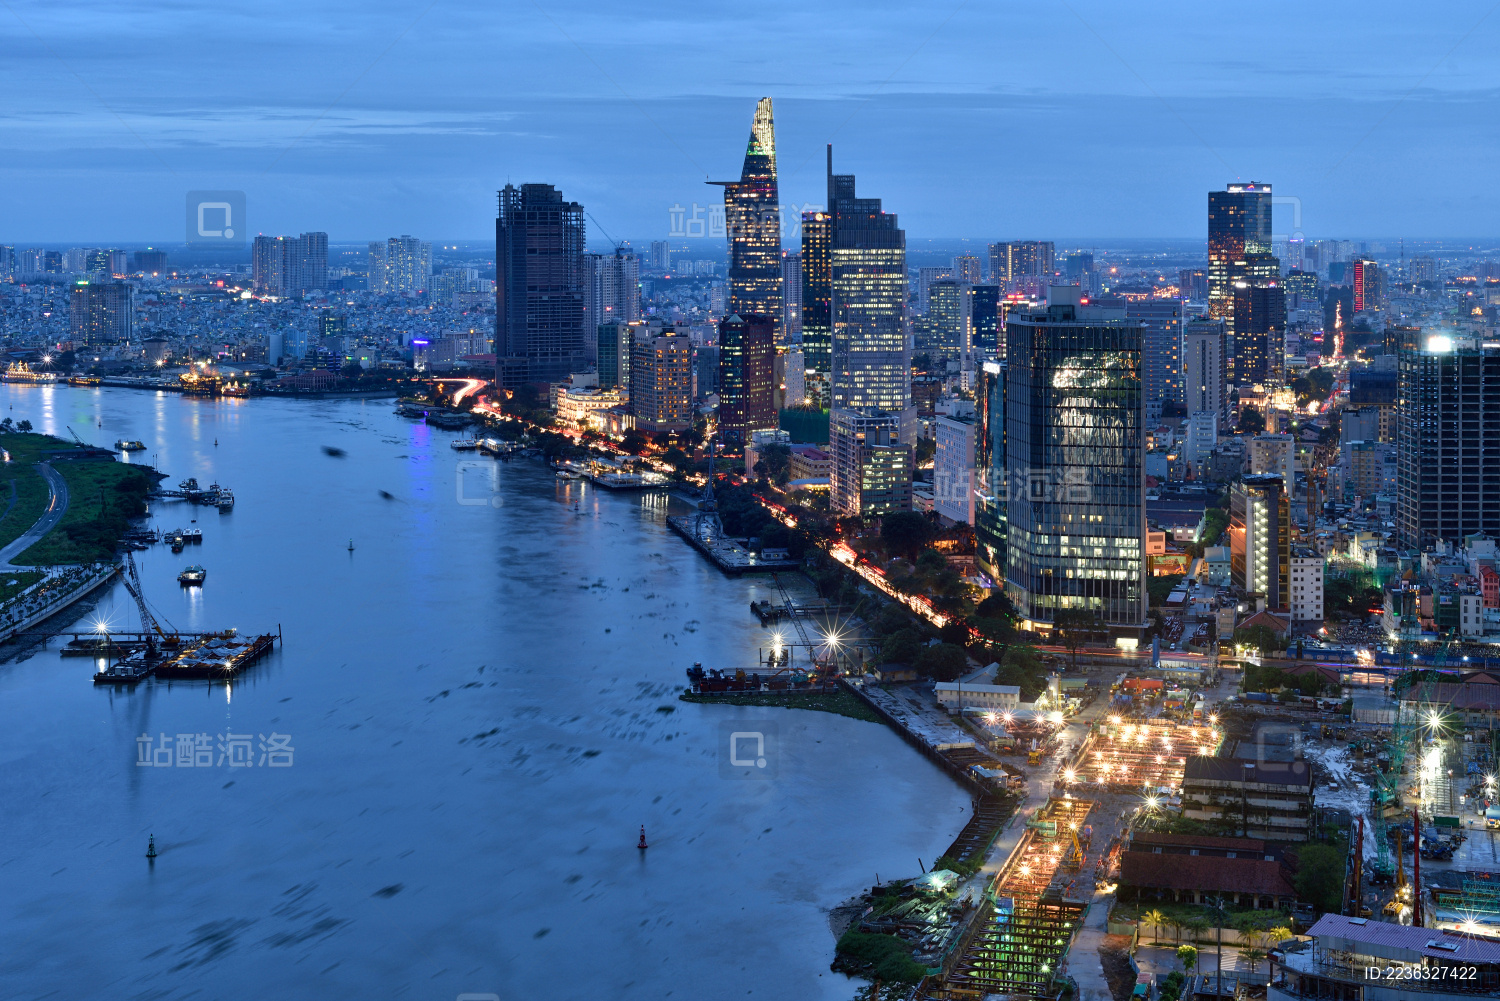 越南胡志明市必玩热门旅游景点与自由行一日游行程、景点门票、交通票券 - Klook客路